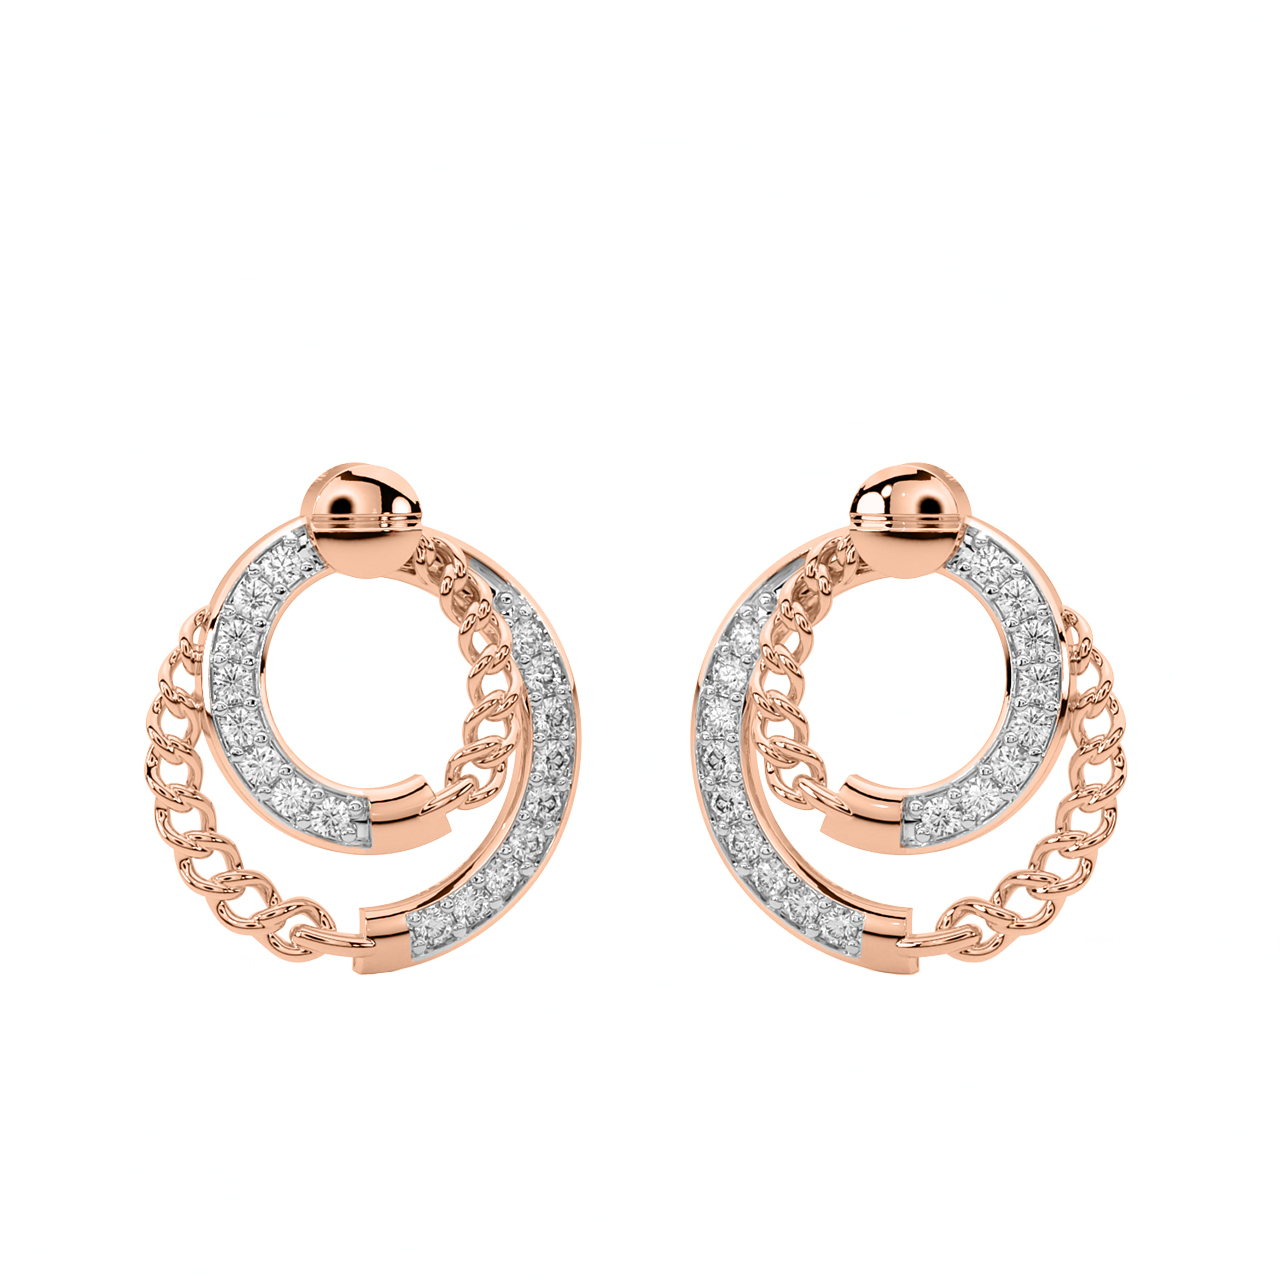 Boteh Beauty Gold Diamond Earrings